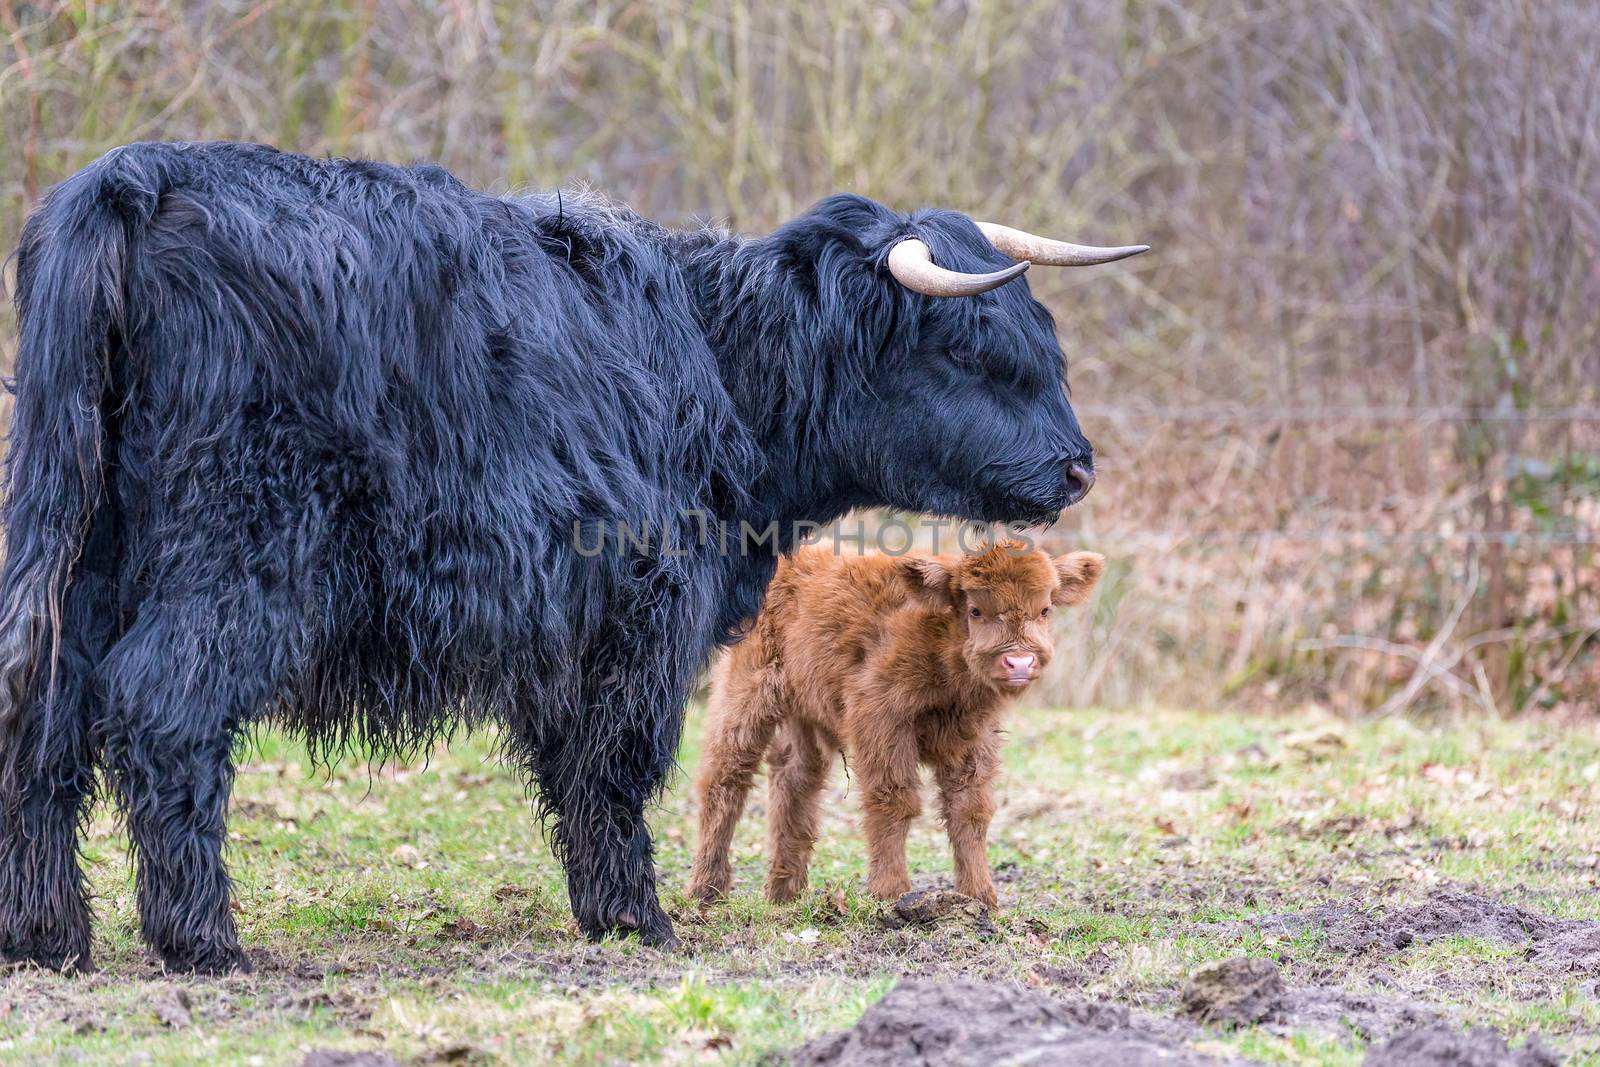 Black Scottish highlander mother cow with newborn calf by BenSchonewille